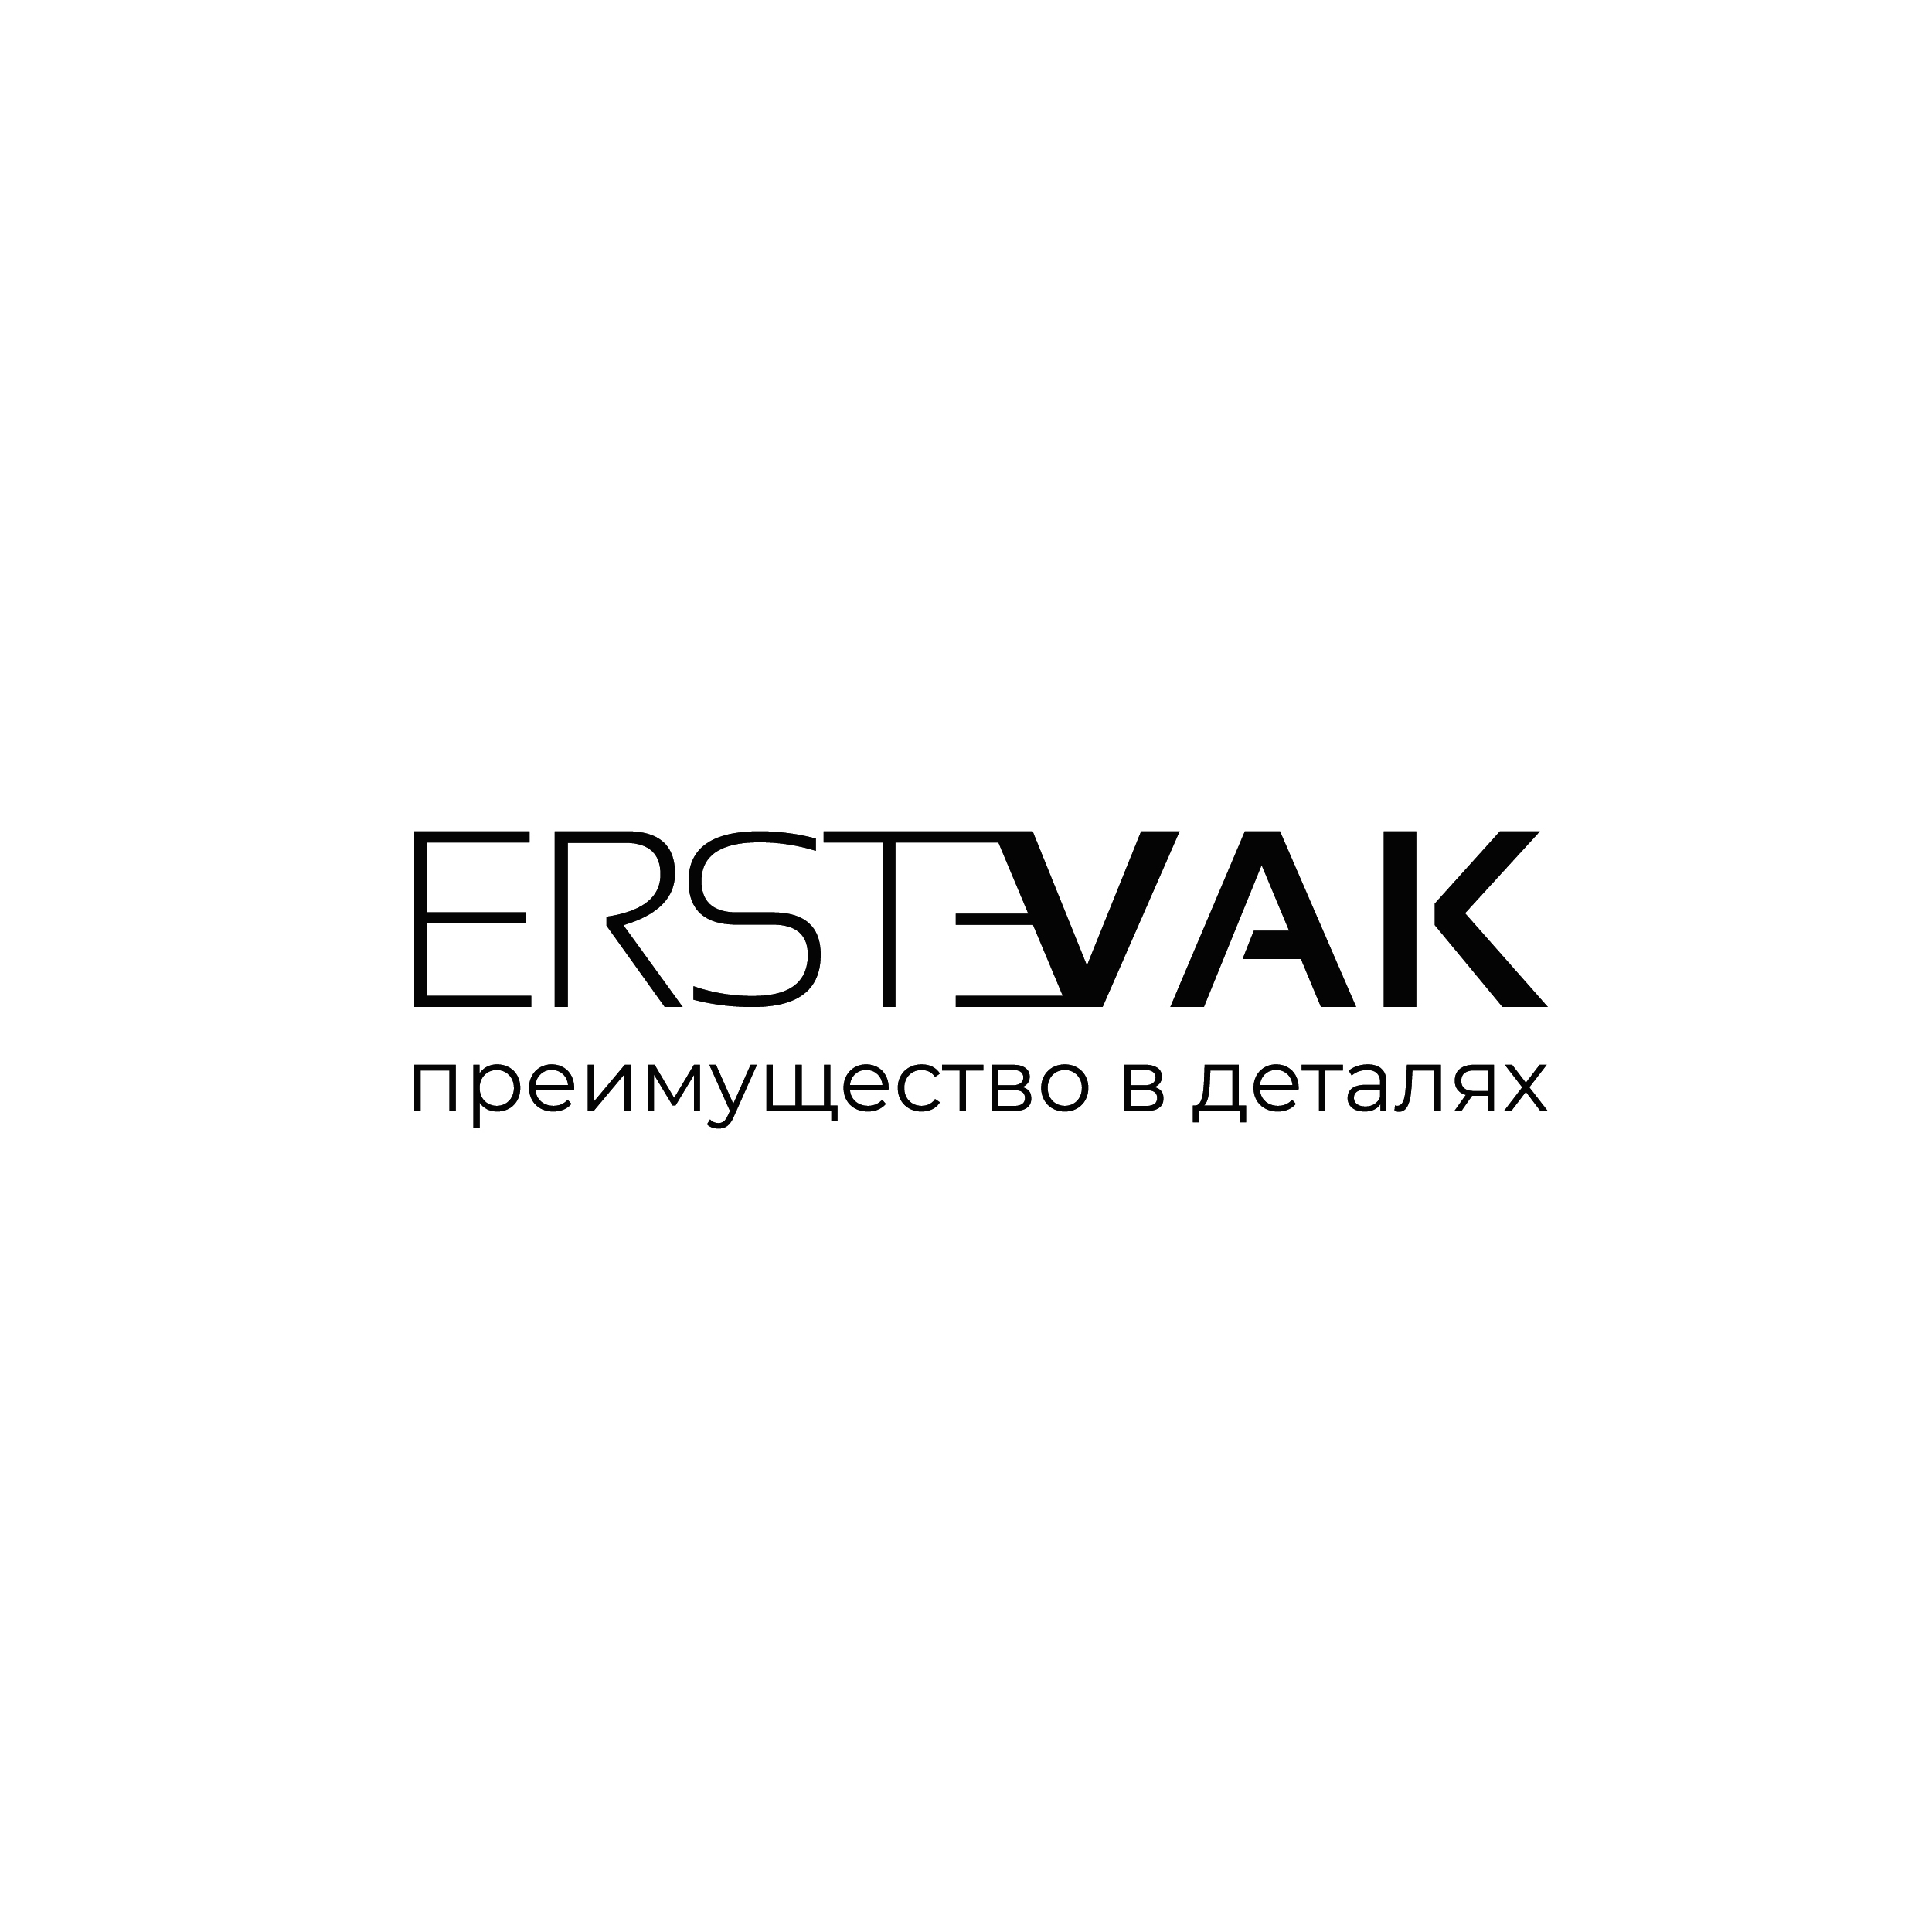 Ооо эрствак. Эрствак. Лого ERSTEVAK. МОССКЛАД логотип.